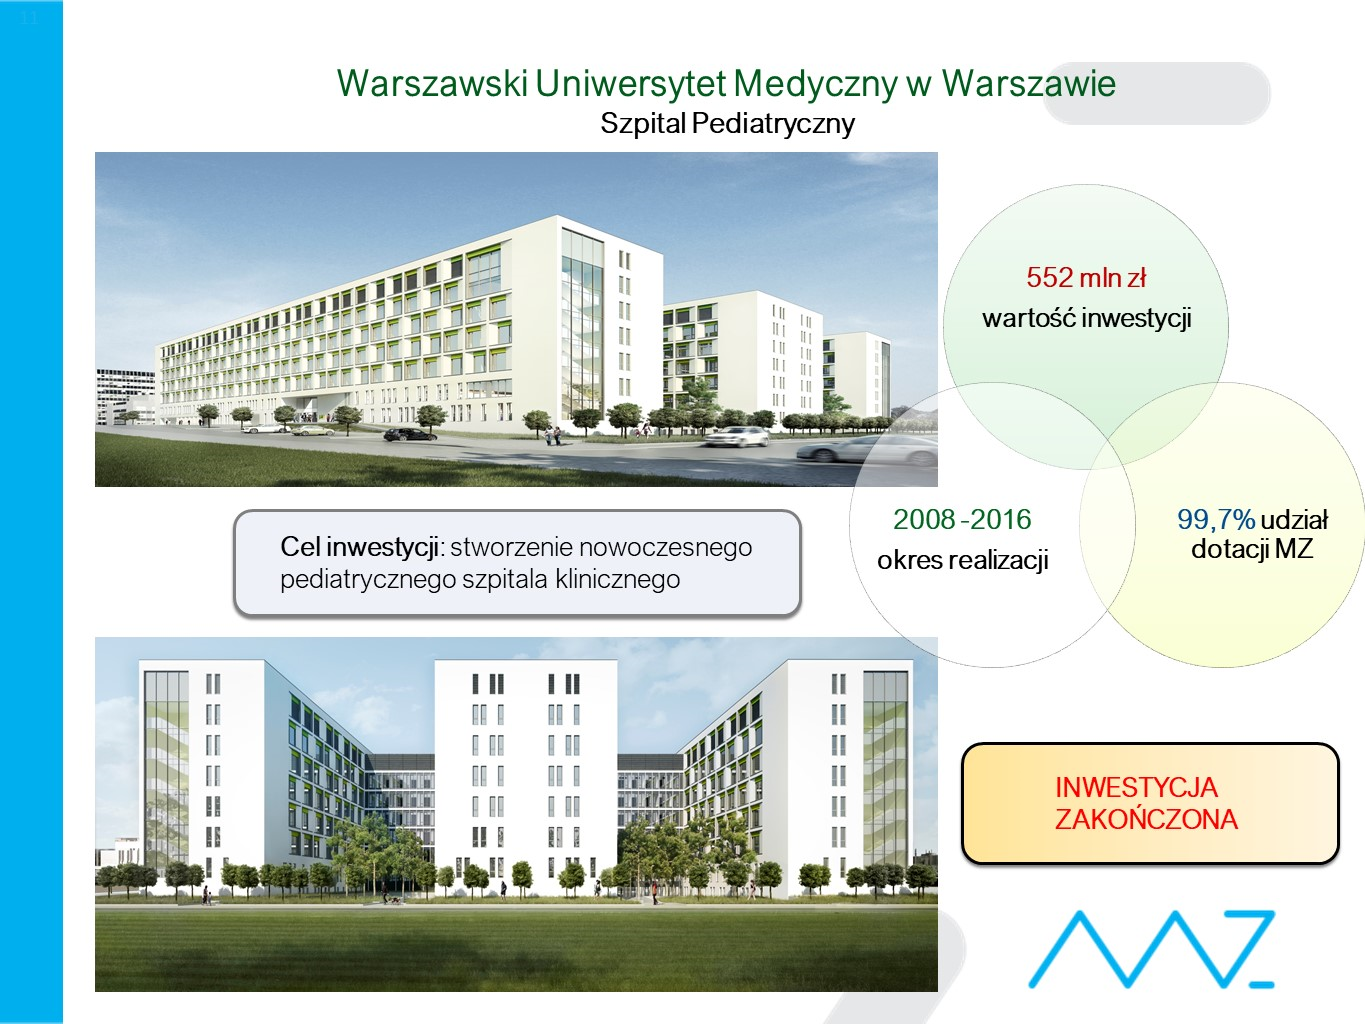 Szpital Pediatryczny Warszawskiego Uniwersytetu Medycznego w Warszawie